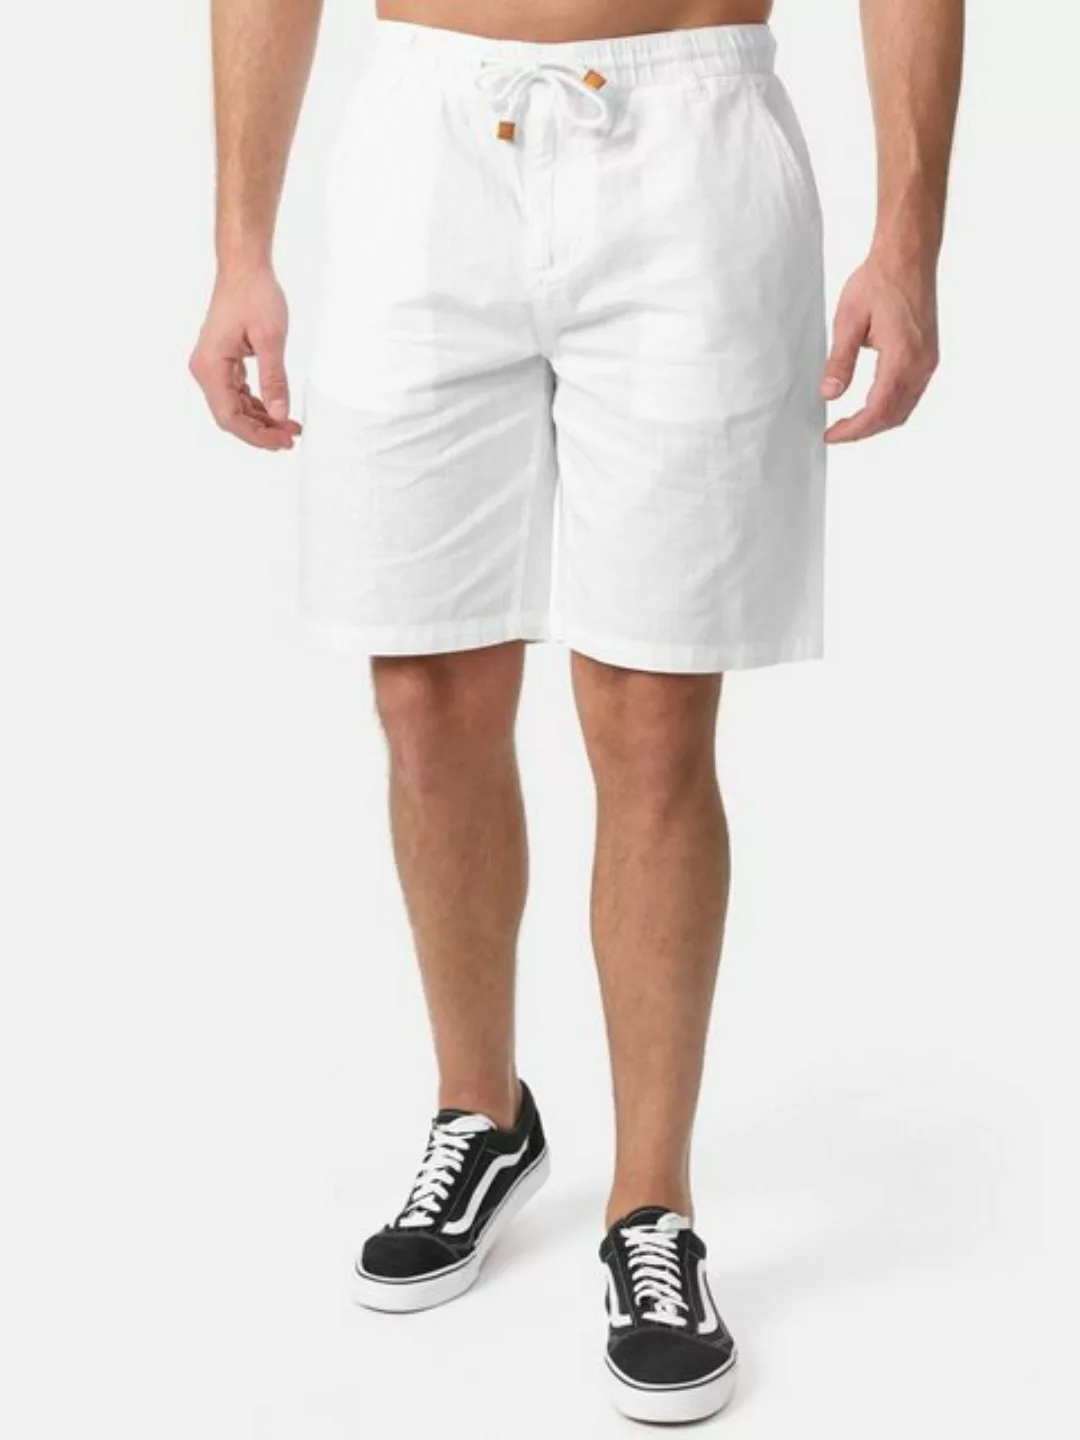 Tazzio Shorts A205 moderne & zeitlose kurze Hose in Leinen-Optik günstig online kaufen